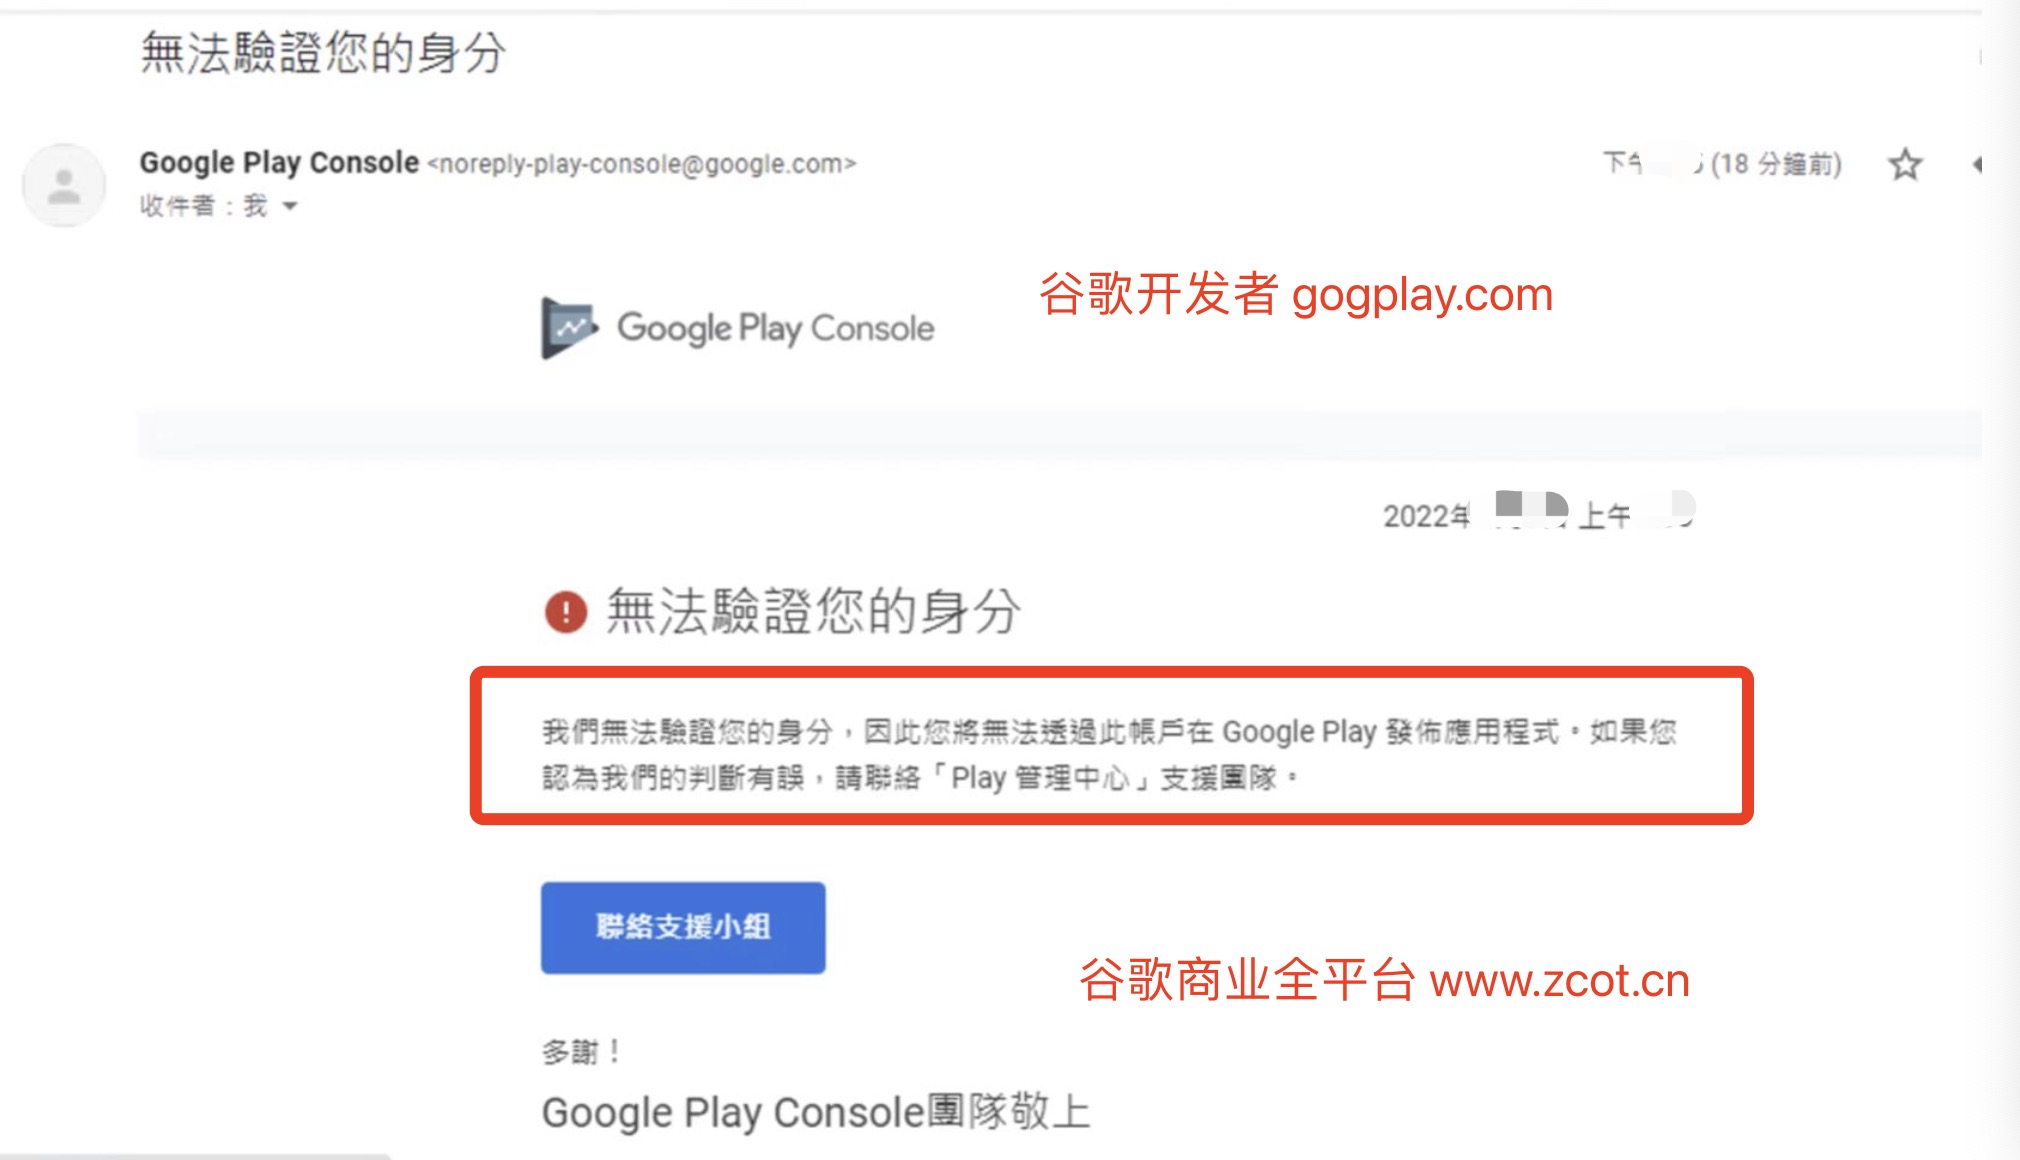 فشلت مصادقة Google play: لا يمكننا التحقق من هويتك ، لذلك لن تتمكن من نشر التطبيقات على google play باستخدام هذا الحساب